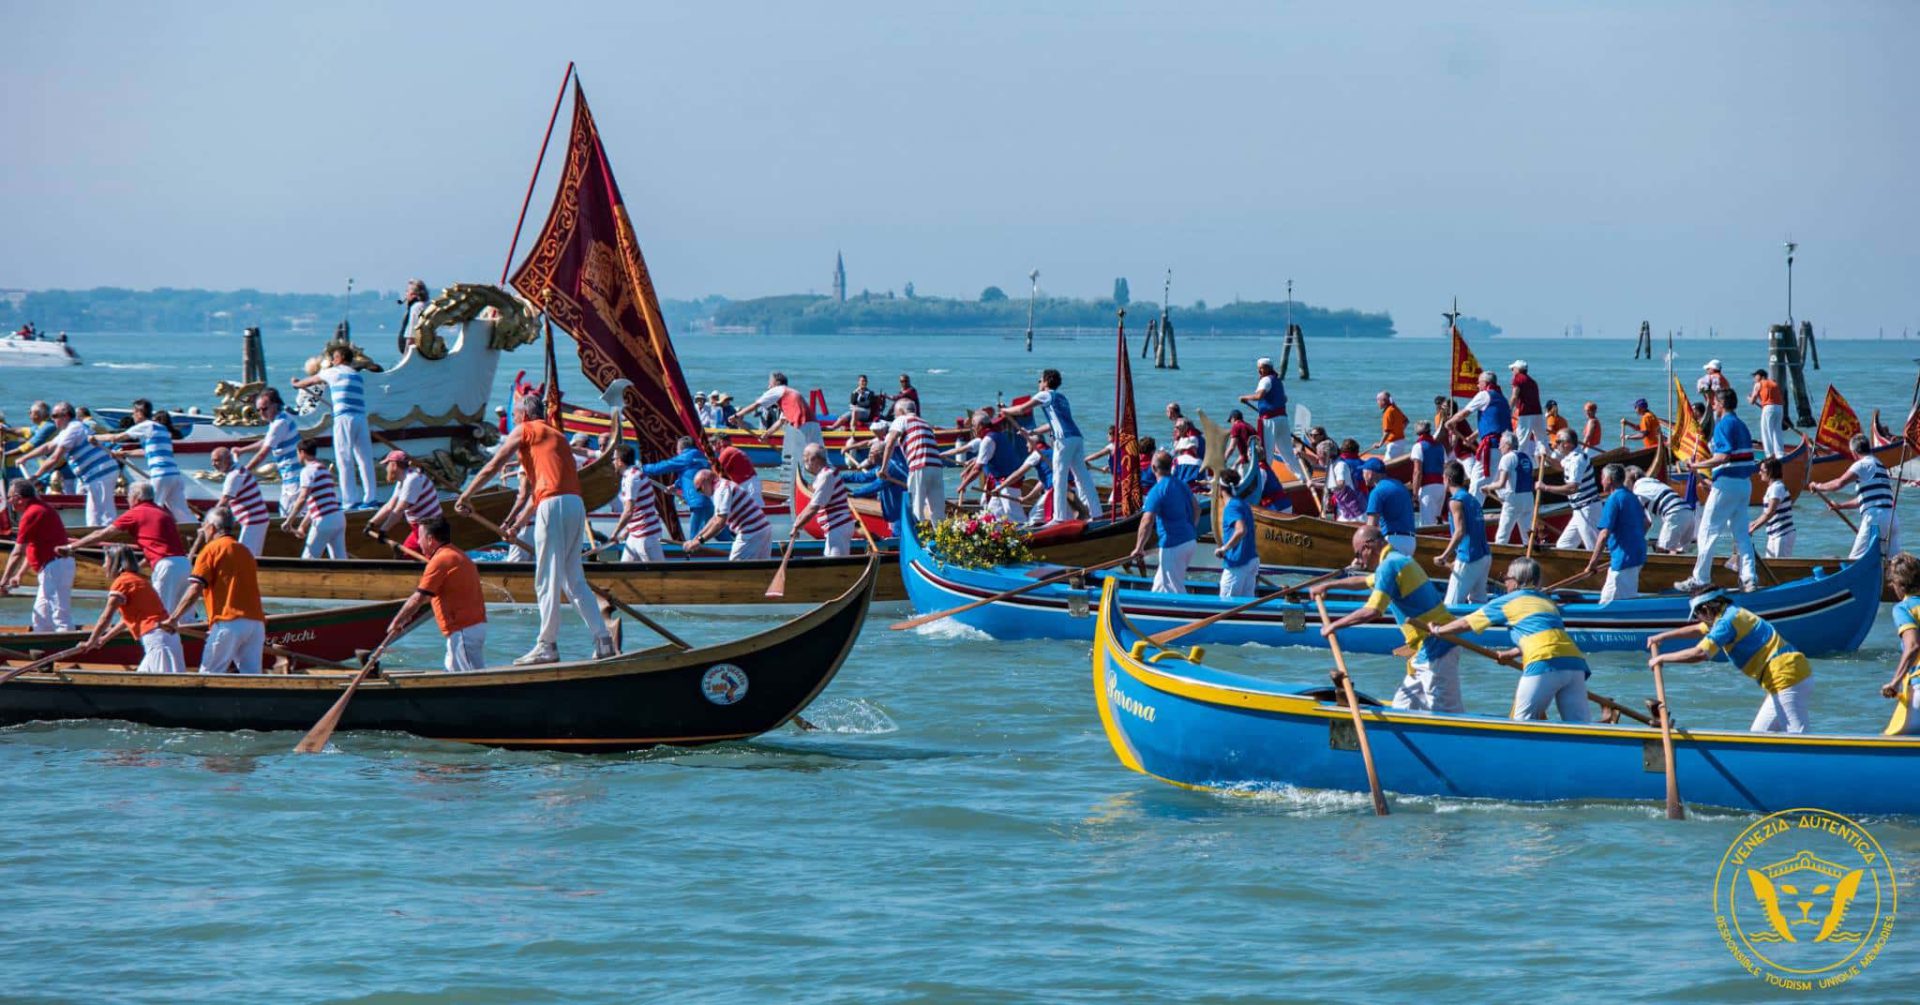 Parade during the Festa della Sensa in Venice, Italy